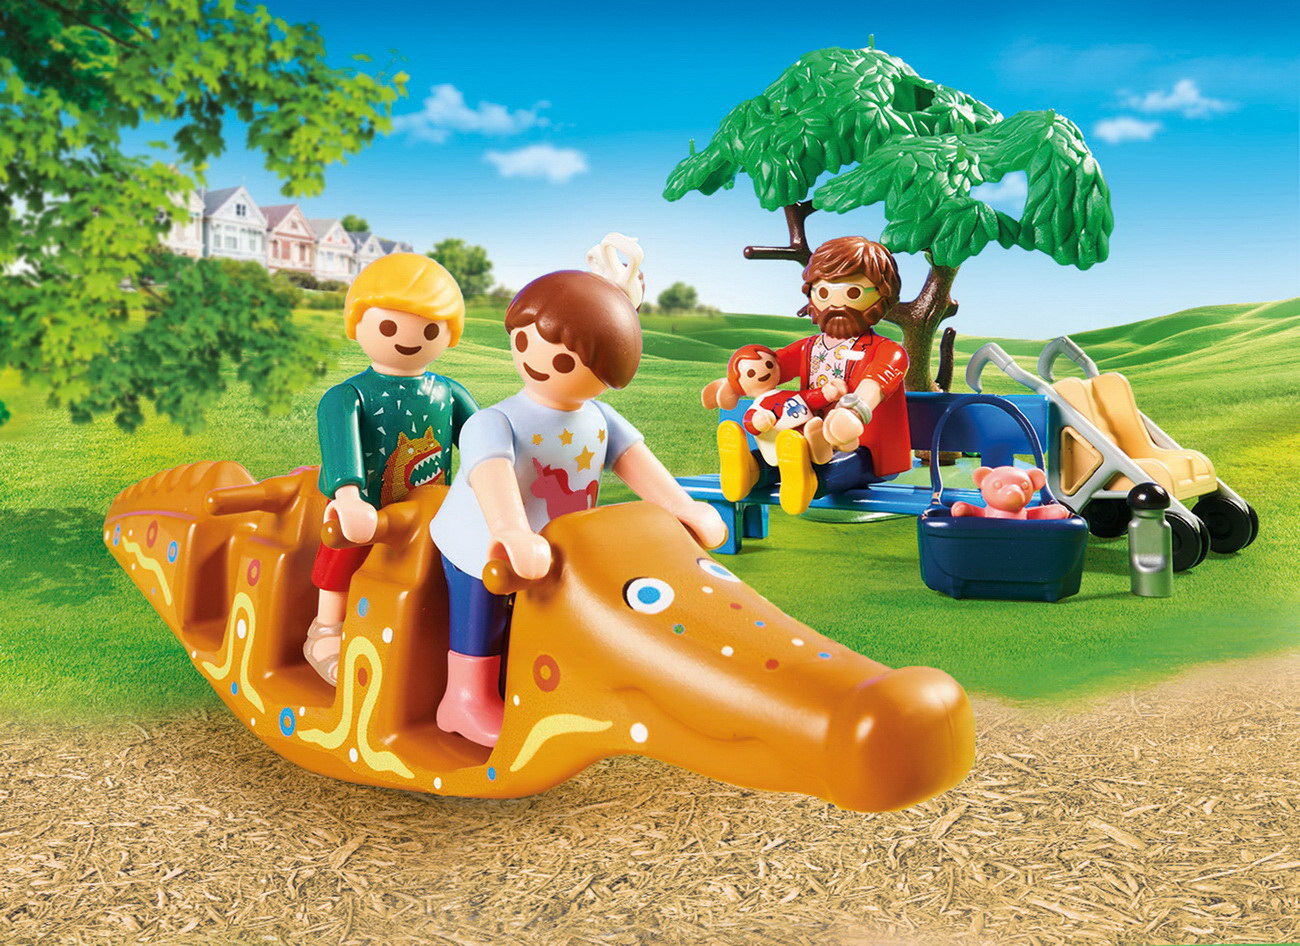 Playmobil 70281 - Abenteuerspielplatz - City Life